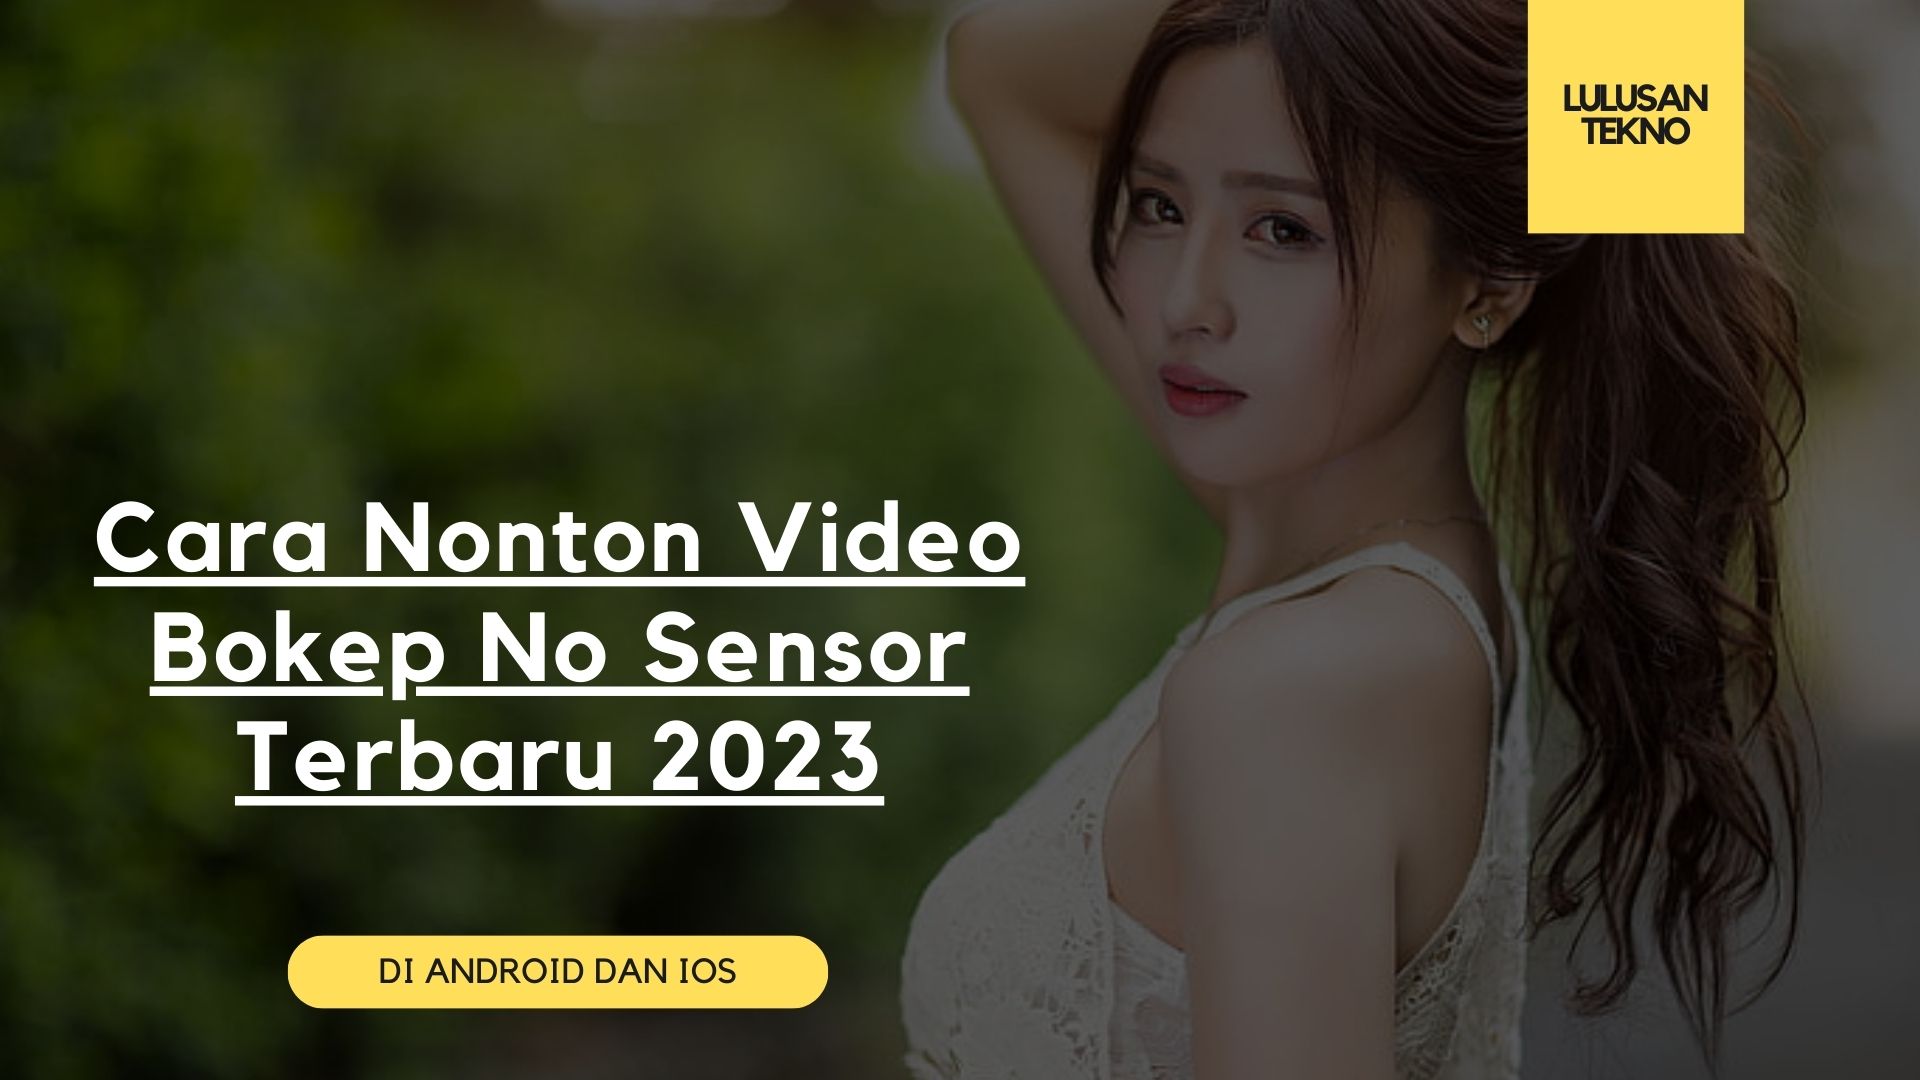 Cara Nonton Video Bokep No Sensor Terbaru 2023